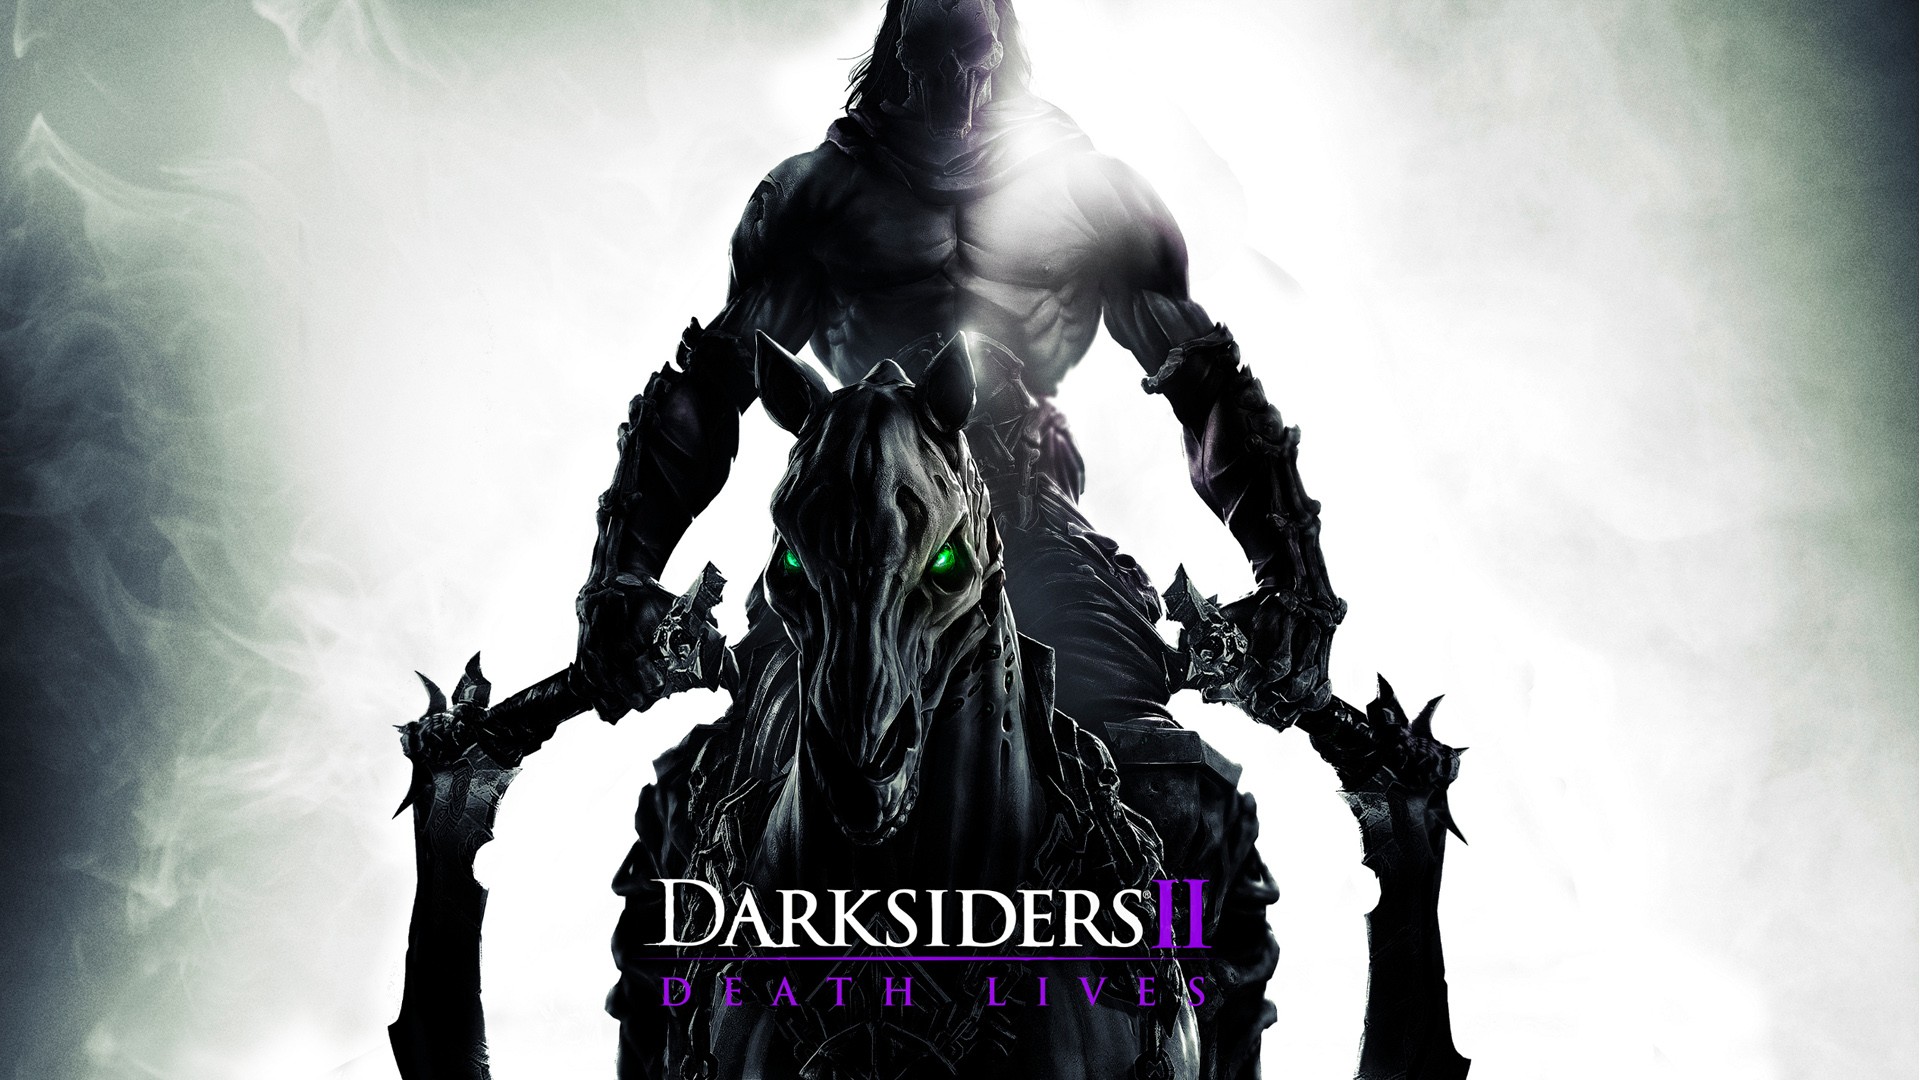 darksiders 2 바탕 화면,소설 속의 인물,pc 게임,배트맨,계략,액션 피규어